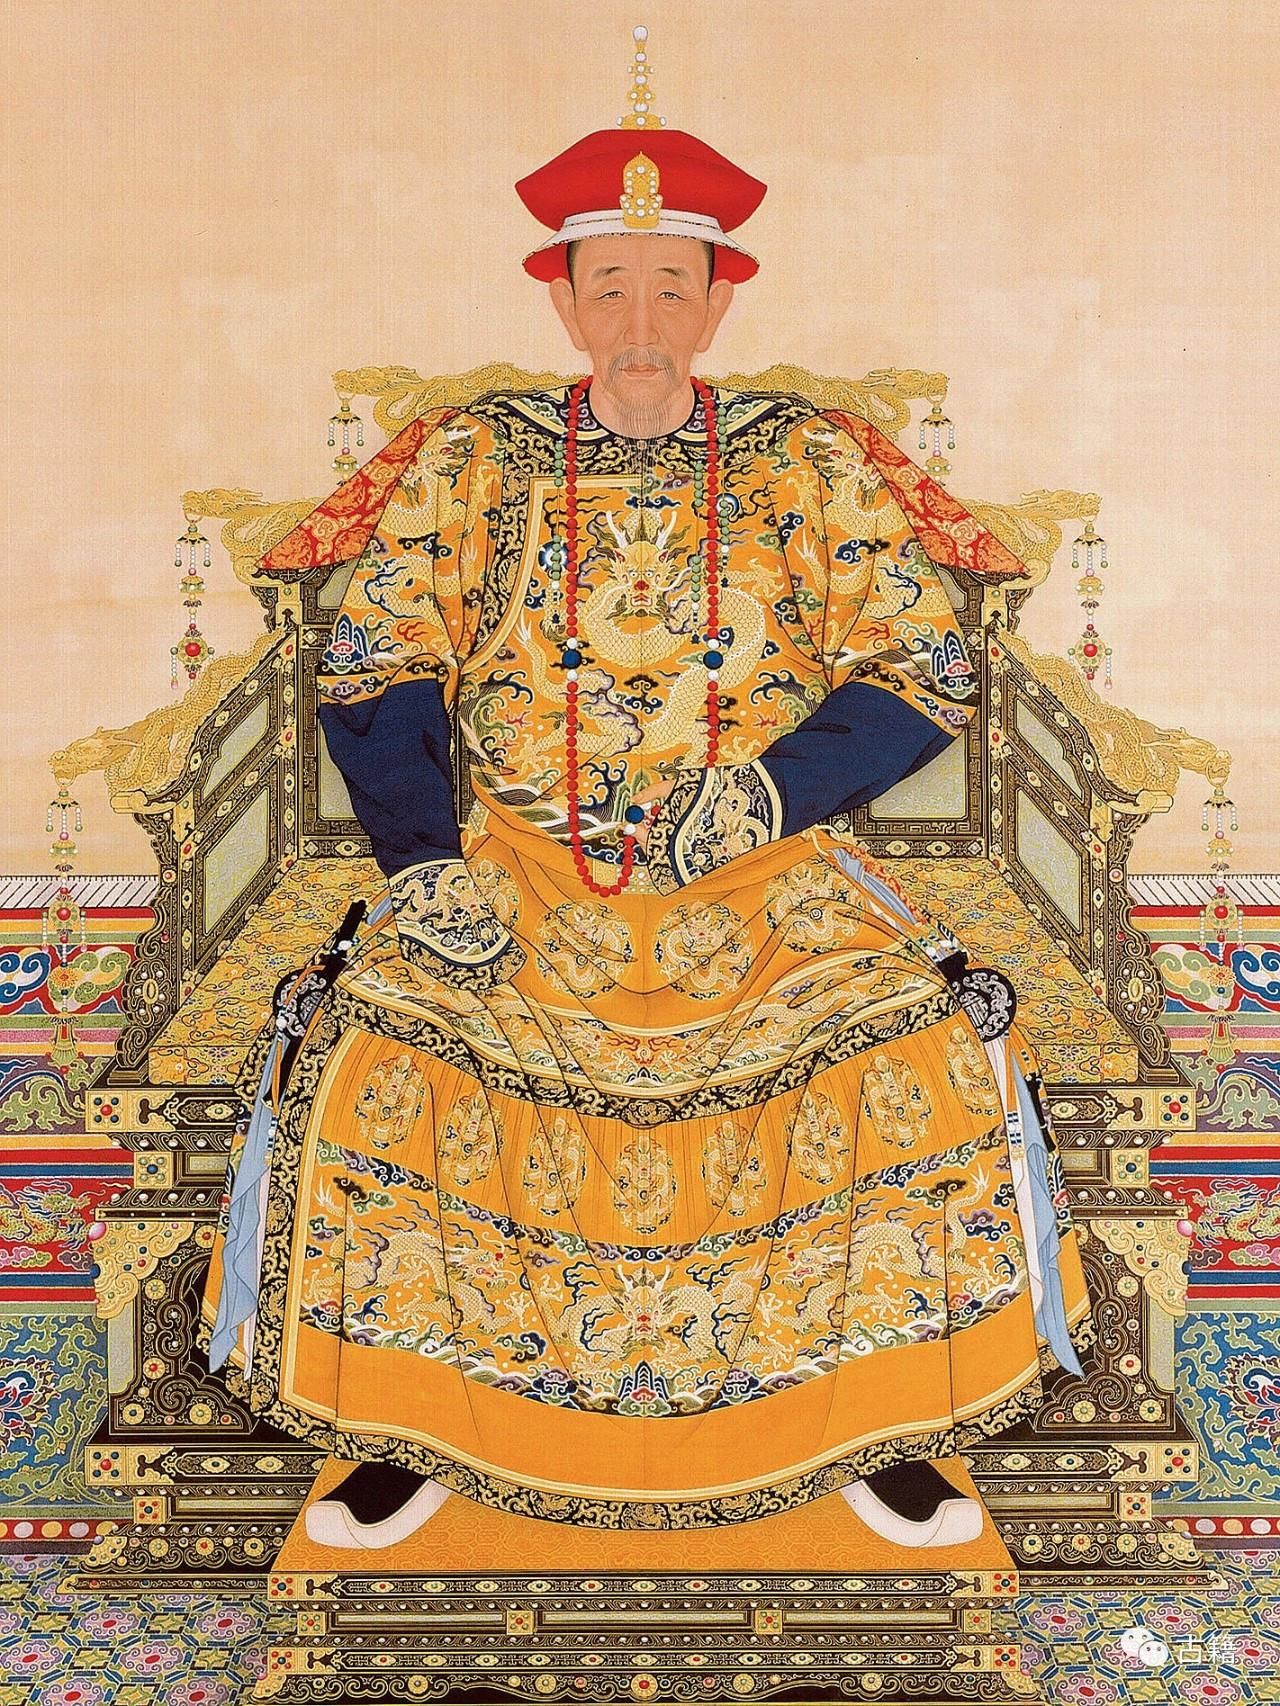 清朝历代皇帝画像